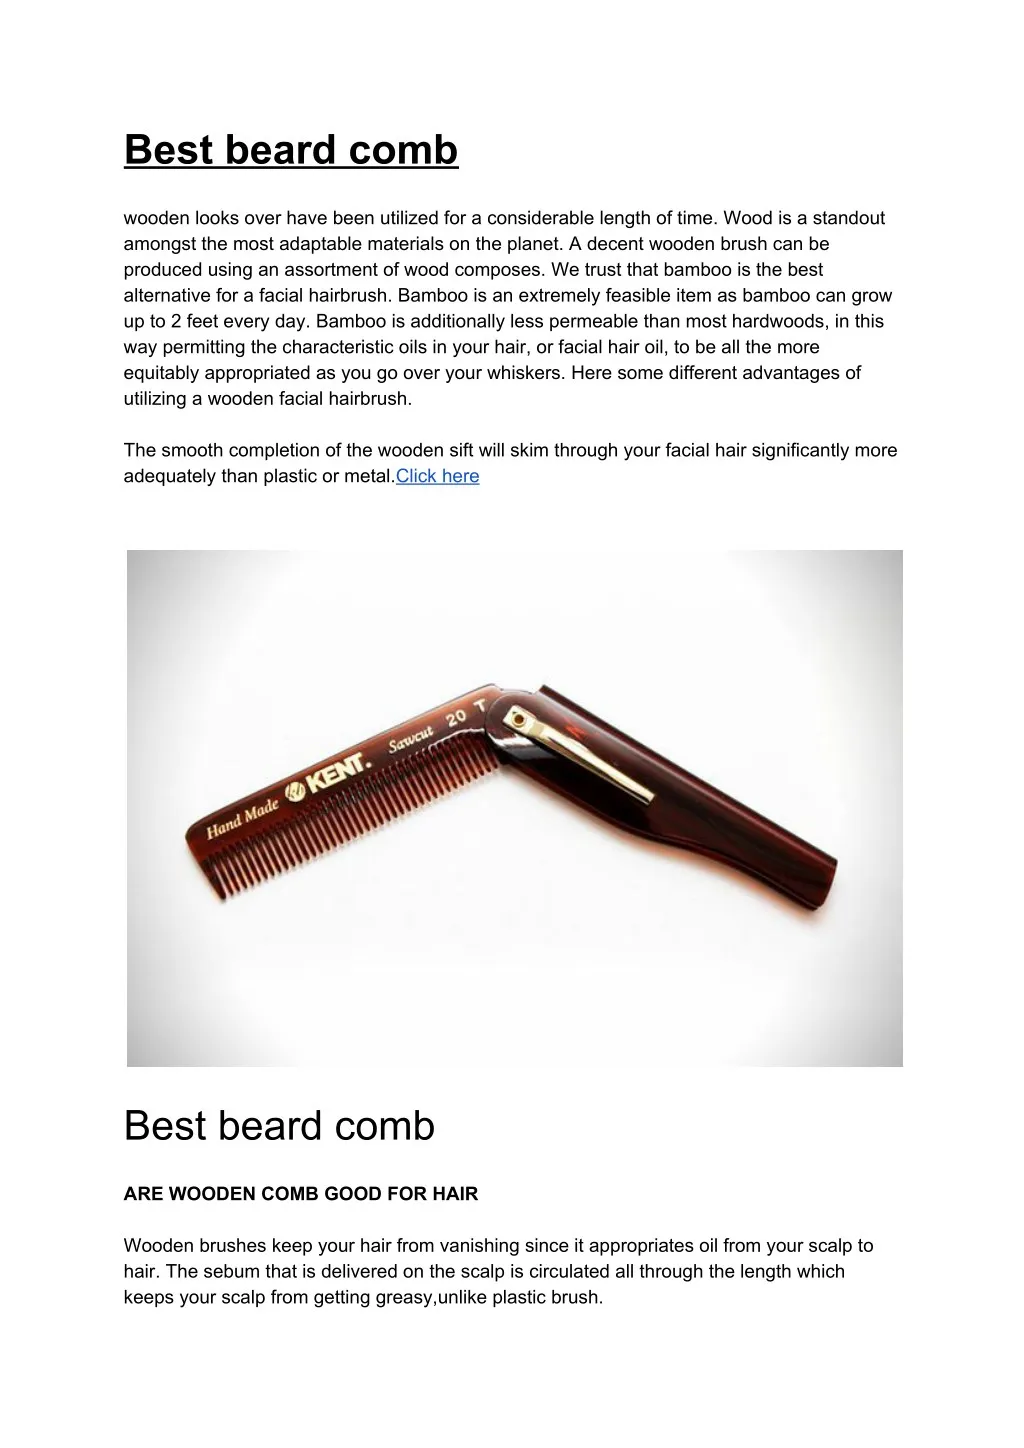 best beard comb wooden looks over have been